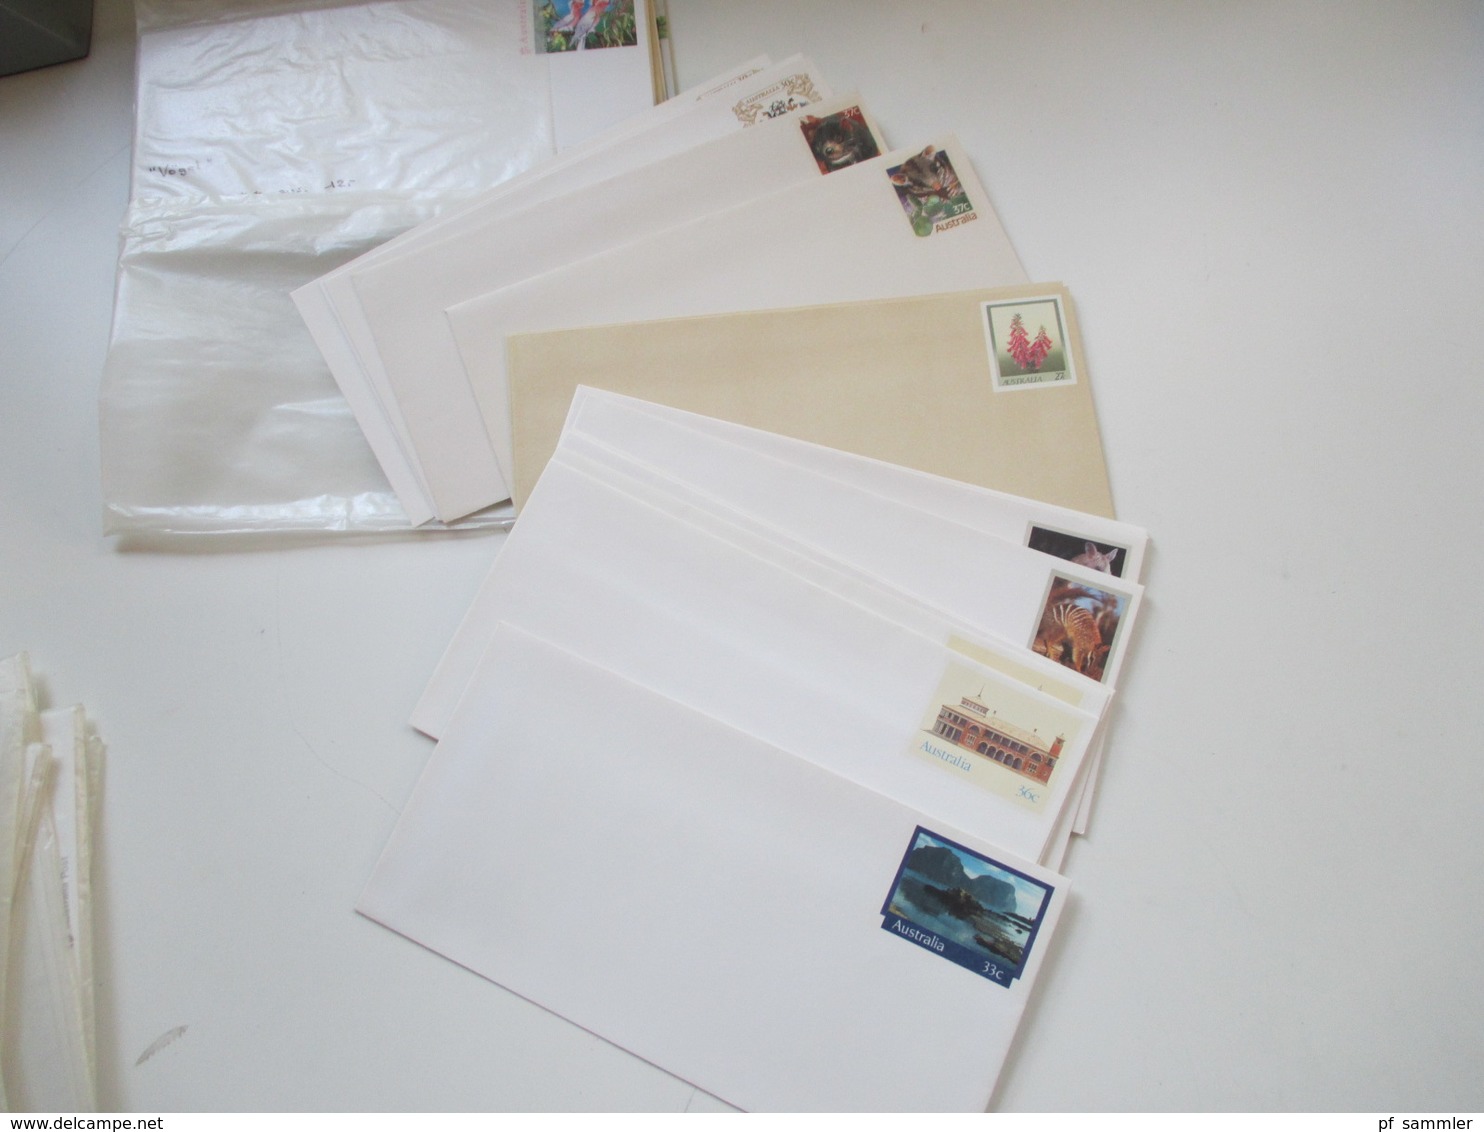 Australien Ganzsachen / Pre stamped envelope / Stationaries ca. 250 stk. Ganze Serien / Motive usw. Ungebraucht / Luxus!